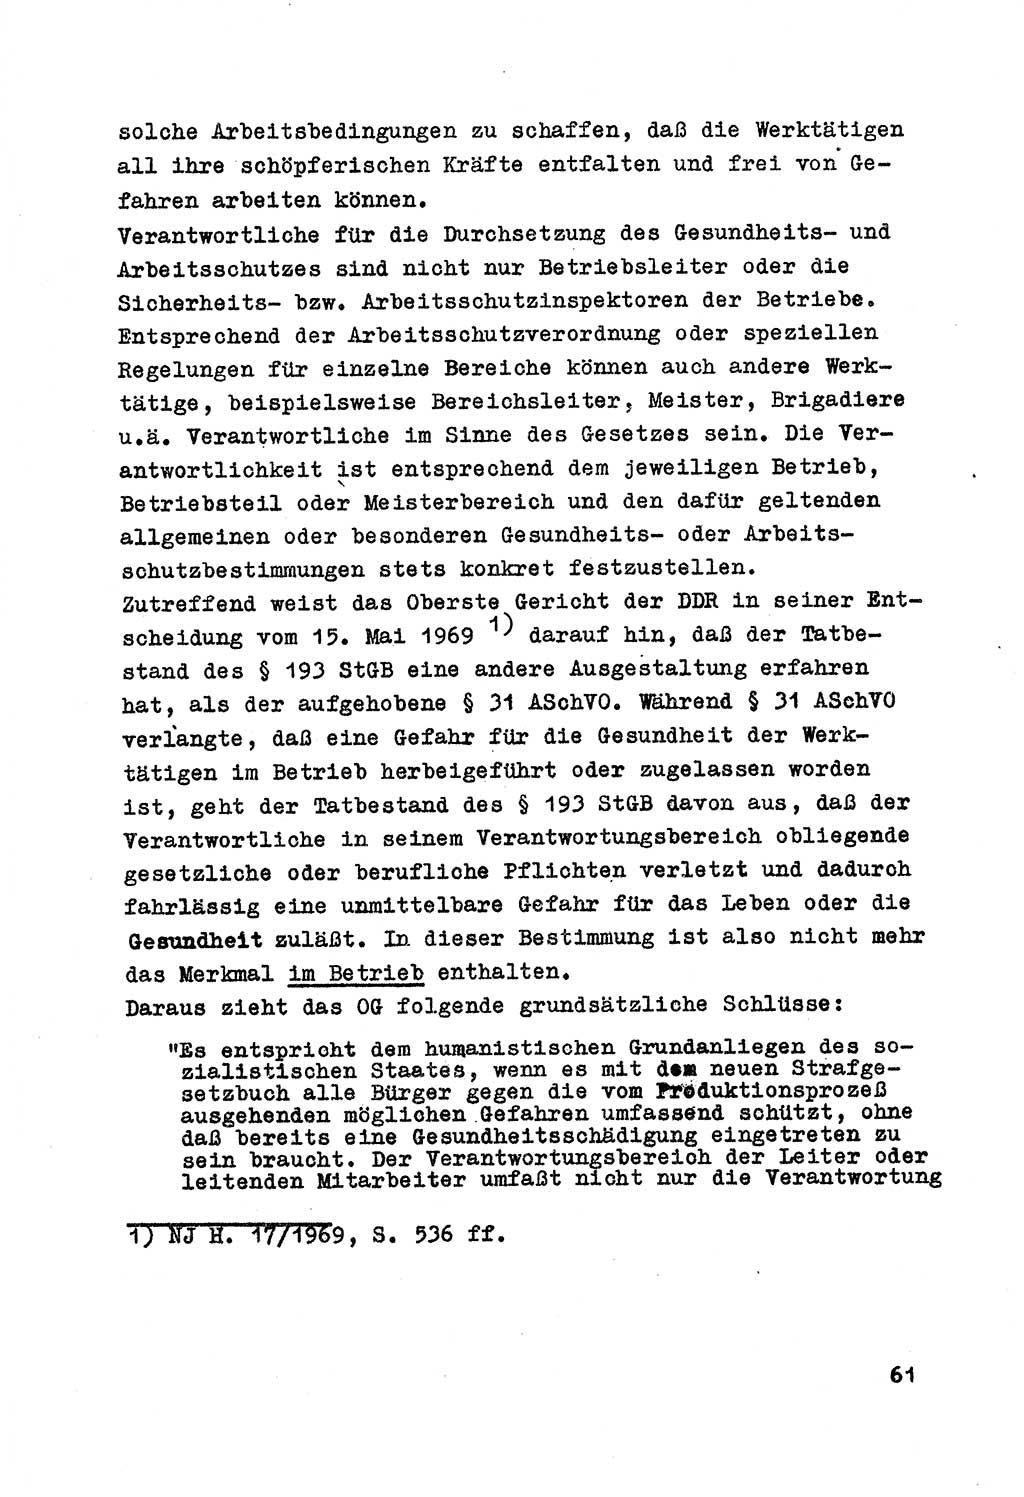 Strafrecht der DDR (Deutsche Demokratische Republik), Besonderer Teil, Lehrmaterial, Heft 7 1970, Seite 61 (Strafr. DDR BT Lehrmat. H. 7 1970, S. 61)